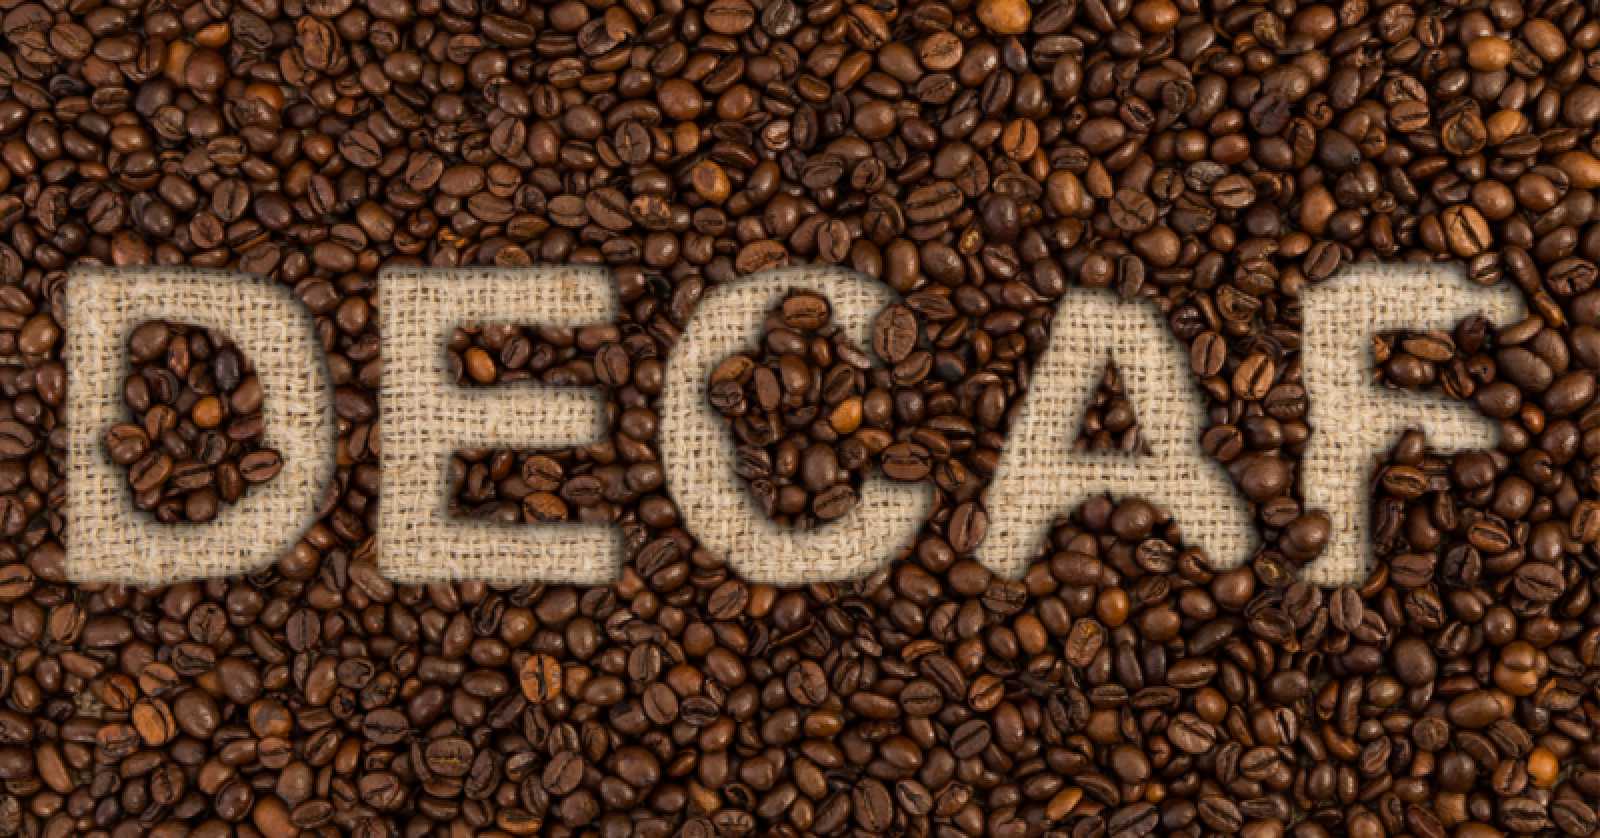 Έχετε αναρωτηθεί; – Να πως βγαίνει η καφεΐνη από τον ντεκαφεϊνέ